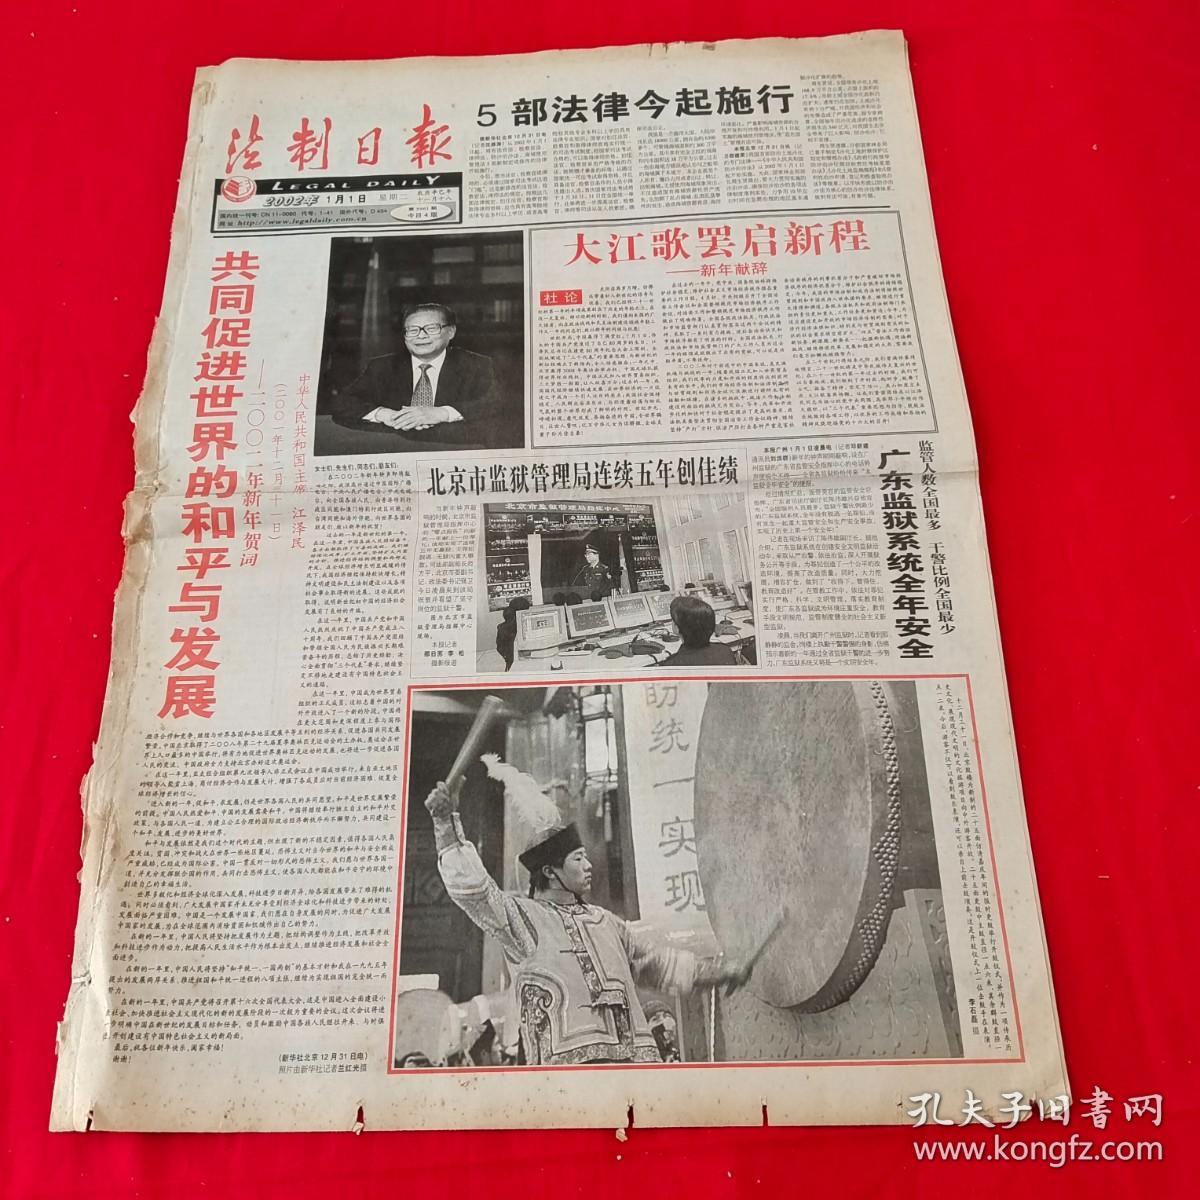 老报纸 法制日报 2002年1月1日 大江歌罢启新程 4版